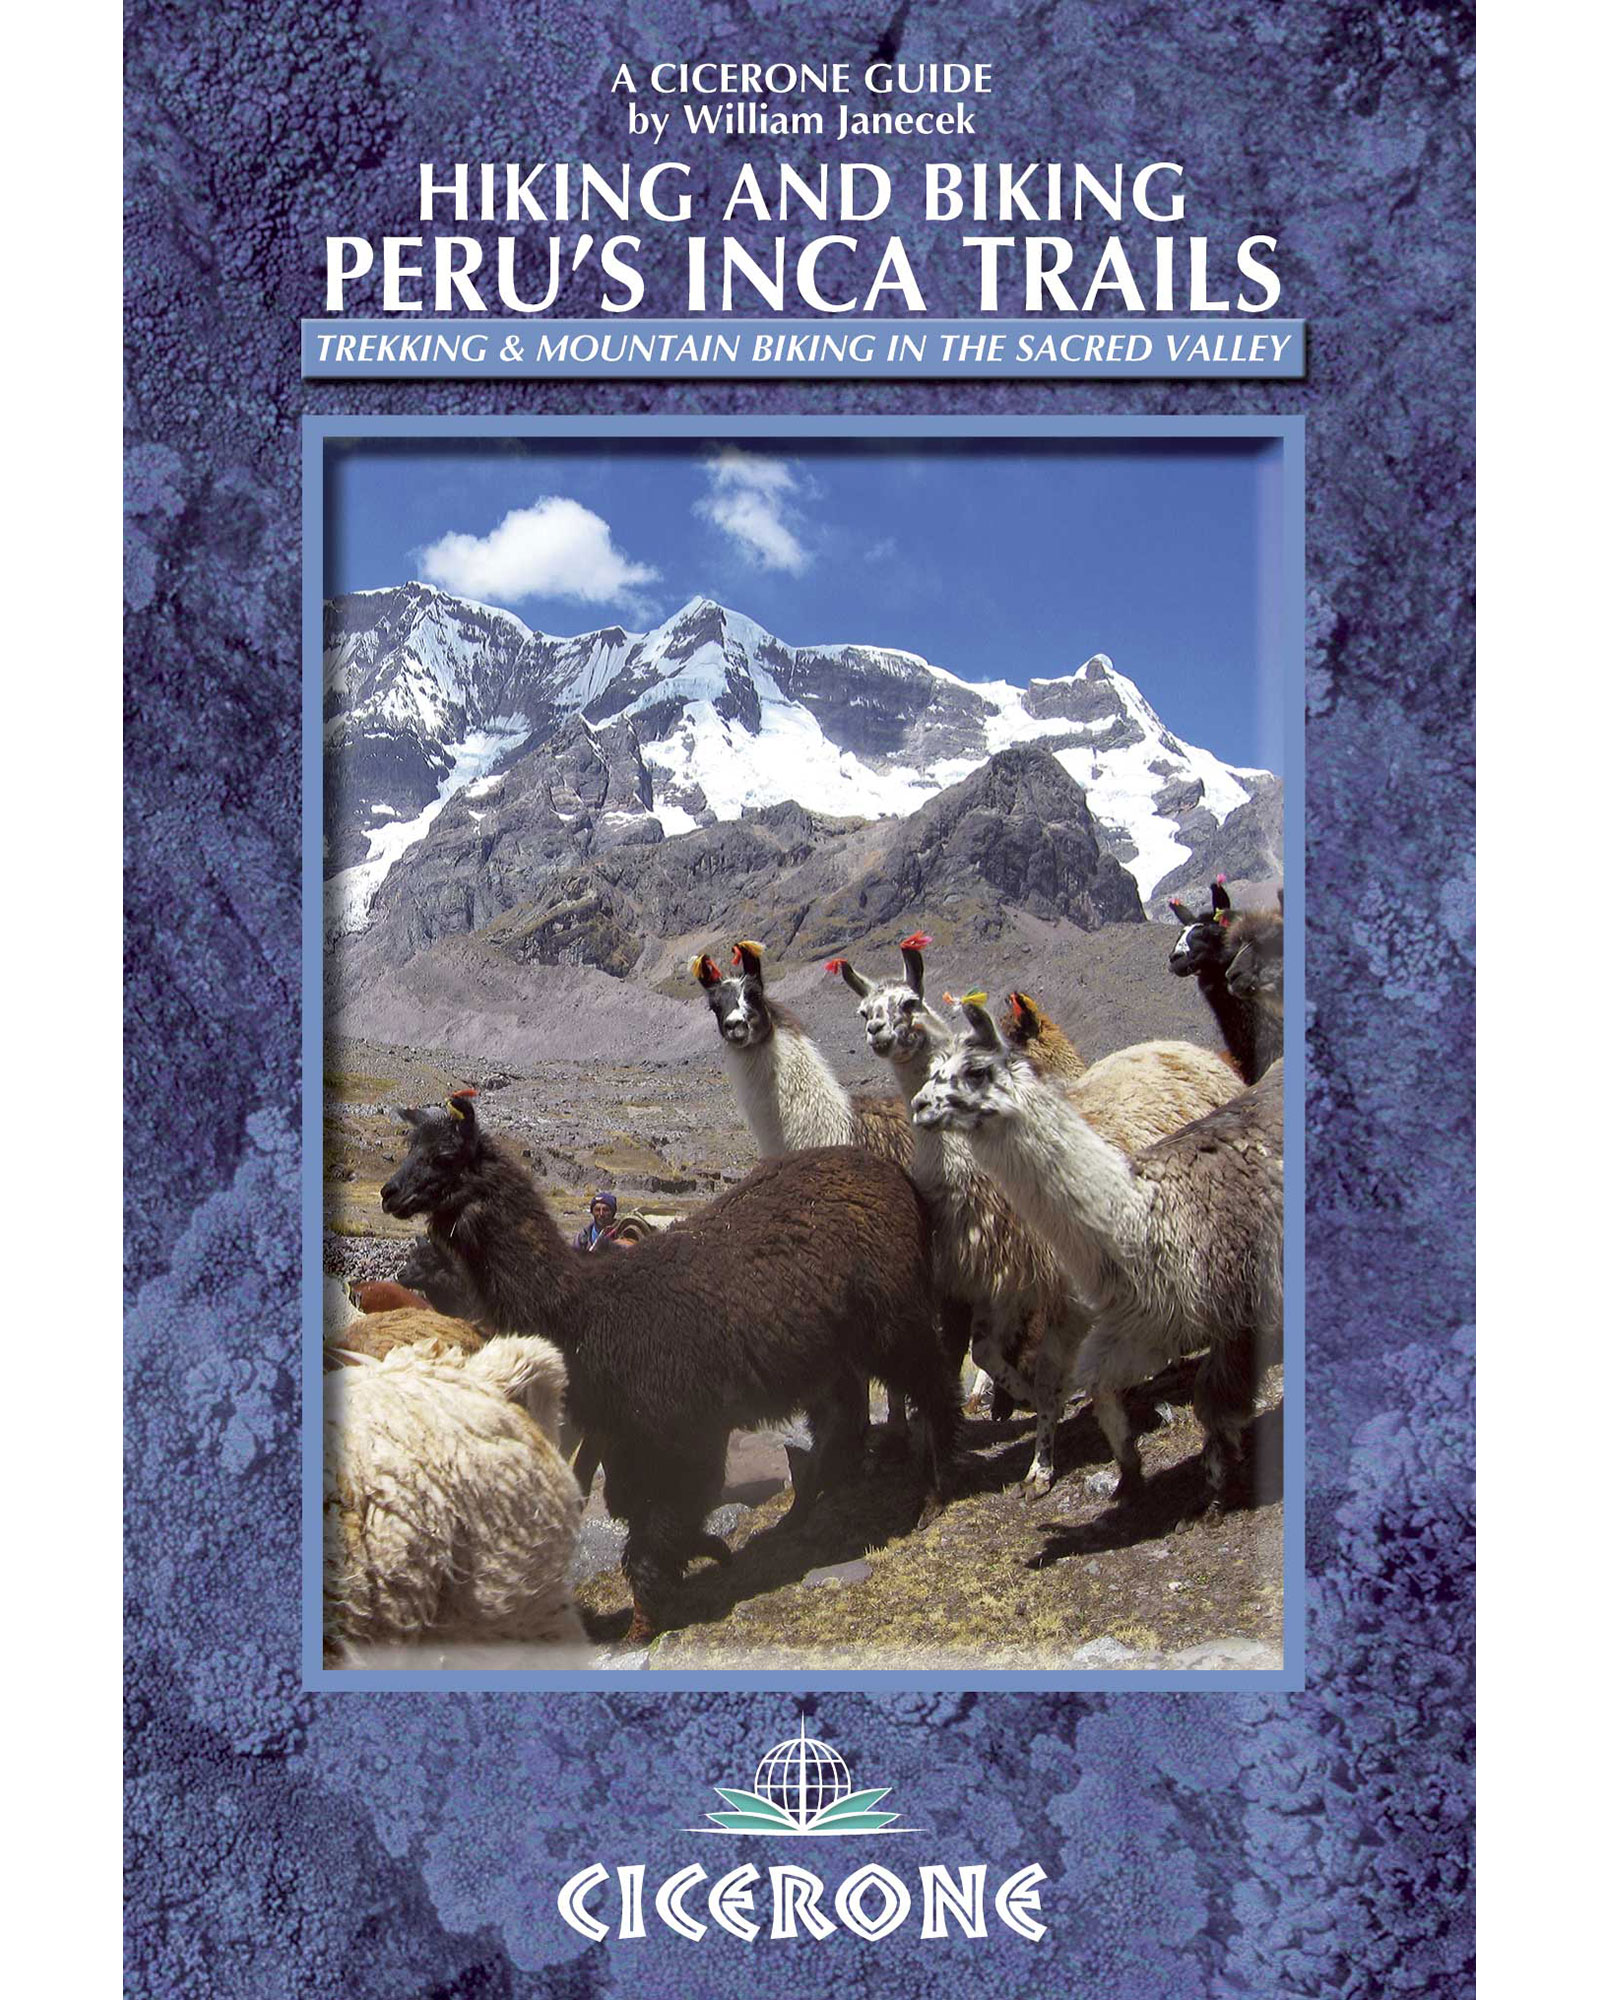 Cicerone Hiking & Biking Peru’s Inca Trails Guide Book